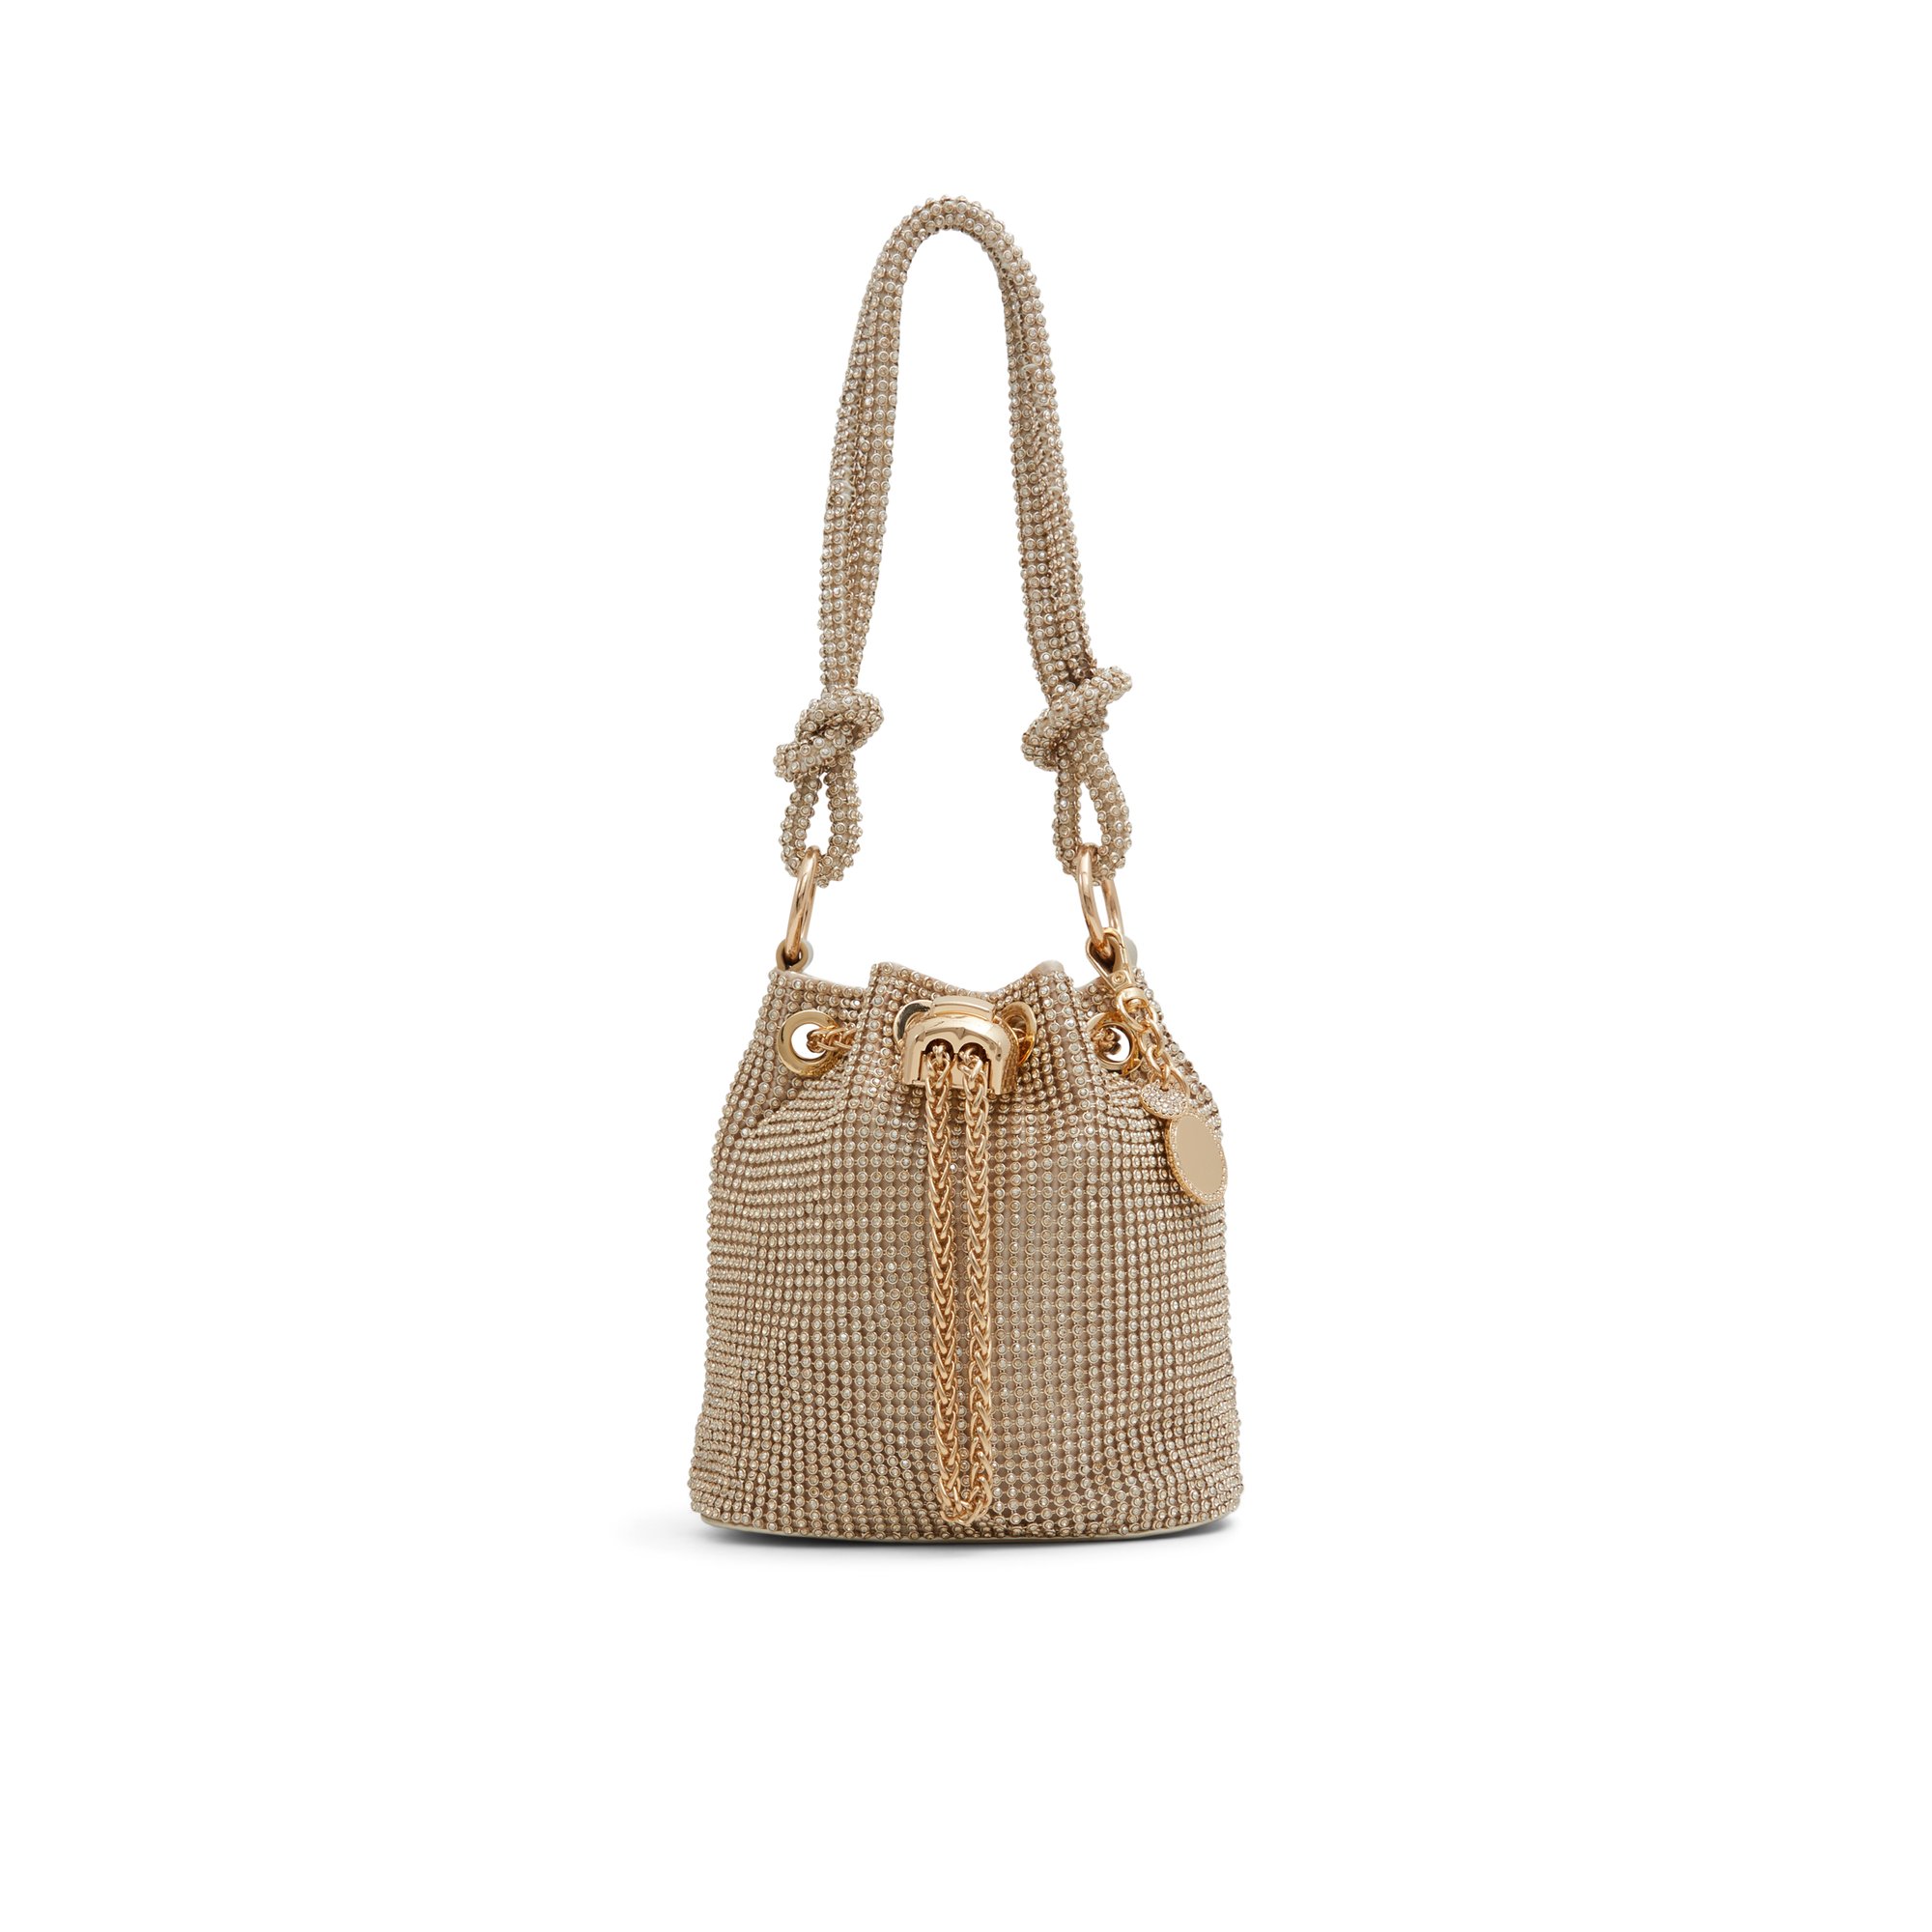 ALDO Marvelax - Women's Top Handle Handbag - Gold